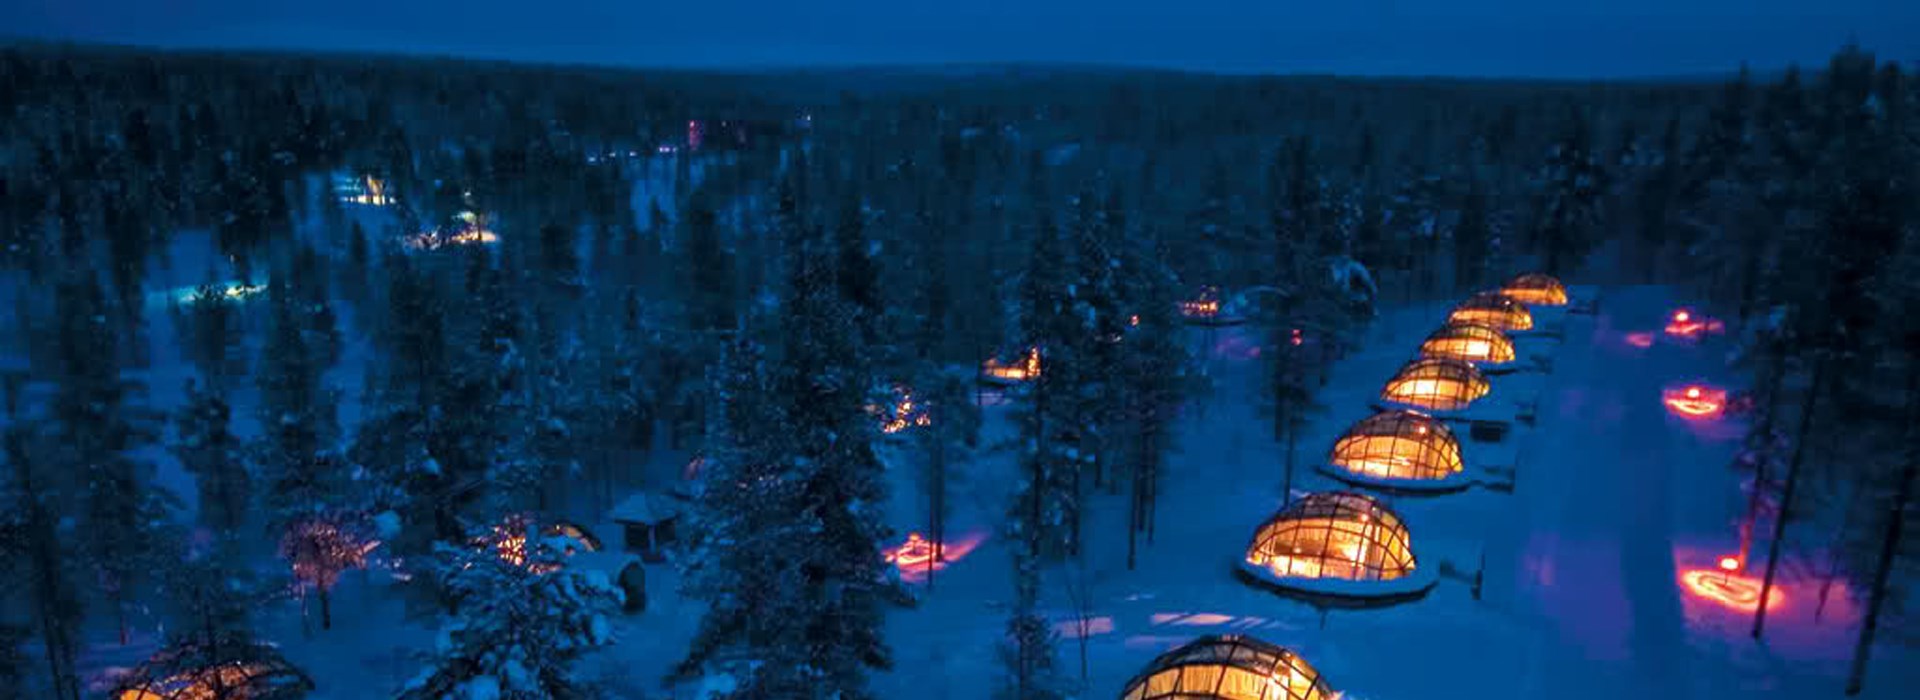 Visiter La Laponie en igloo de verre - Laponie